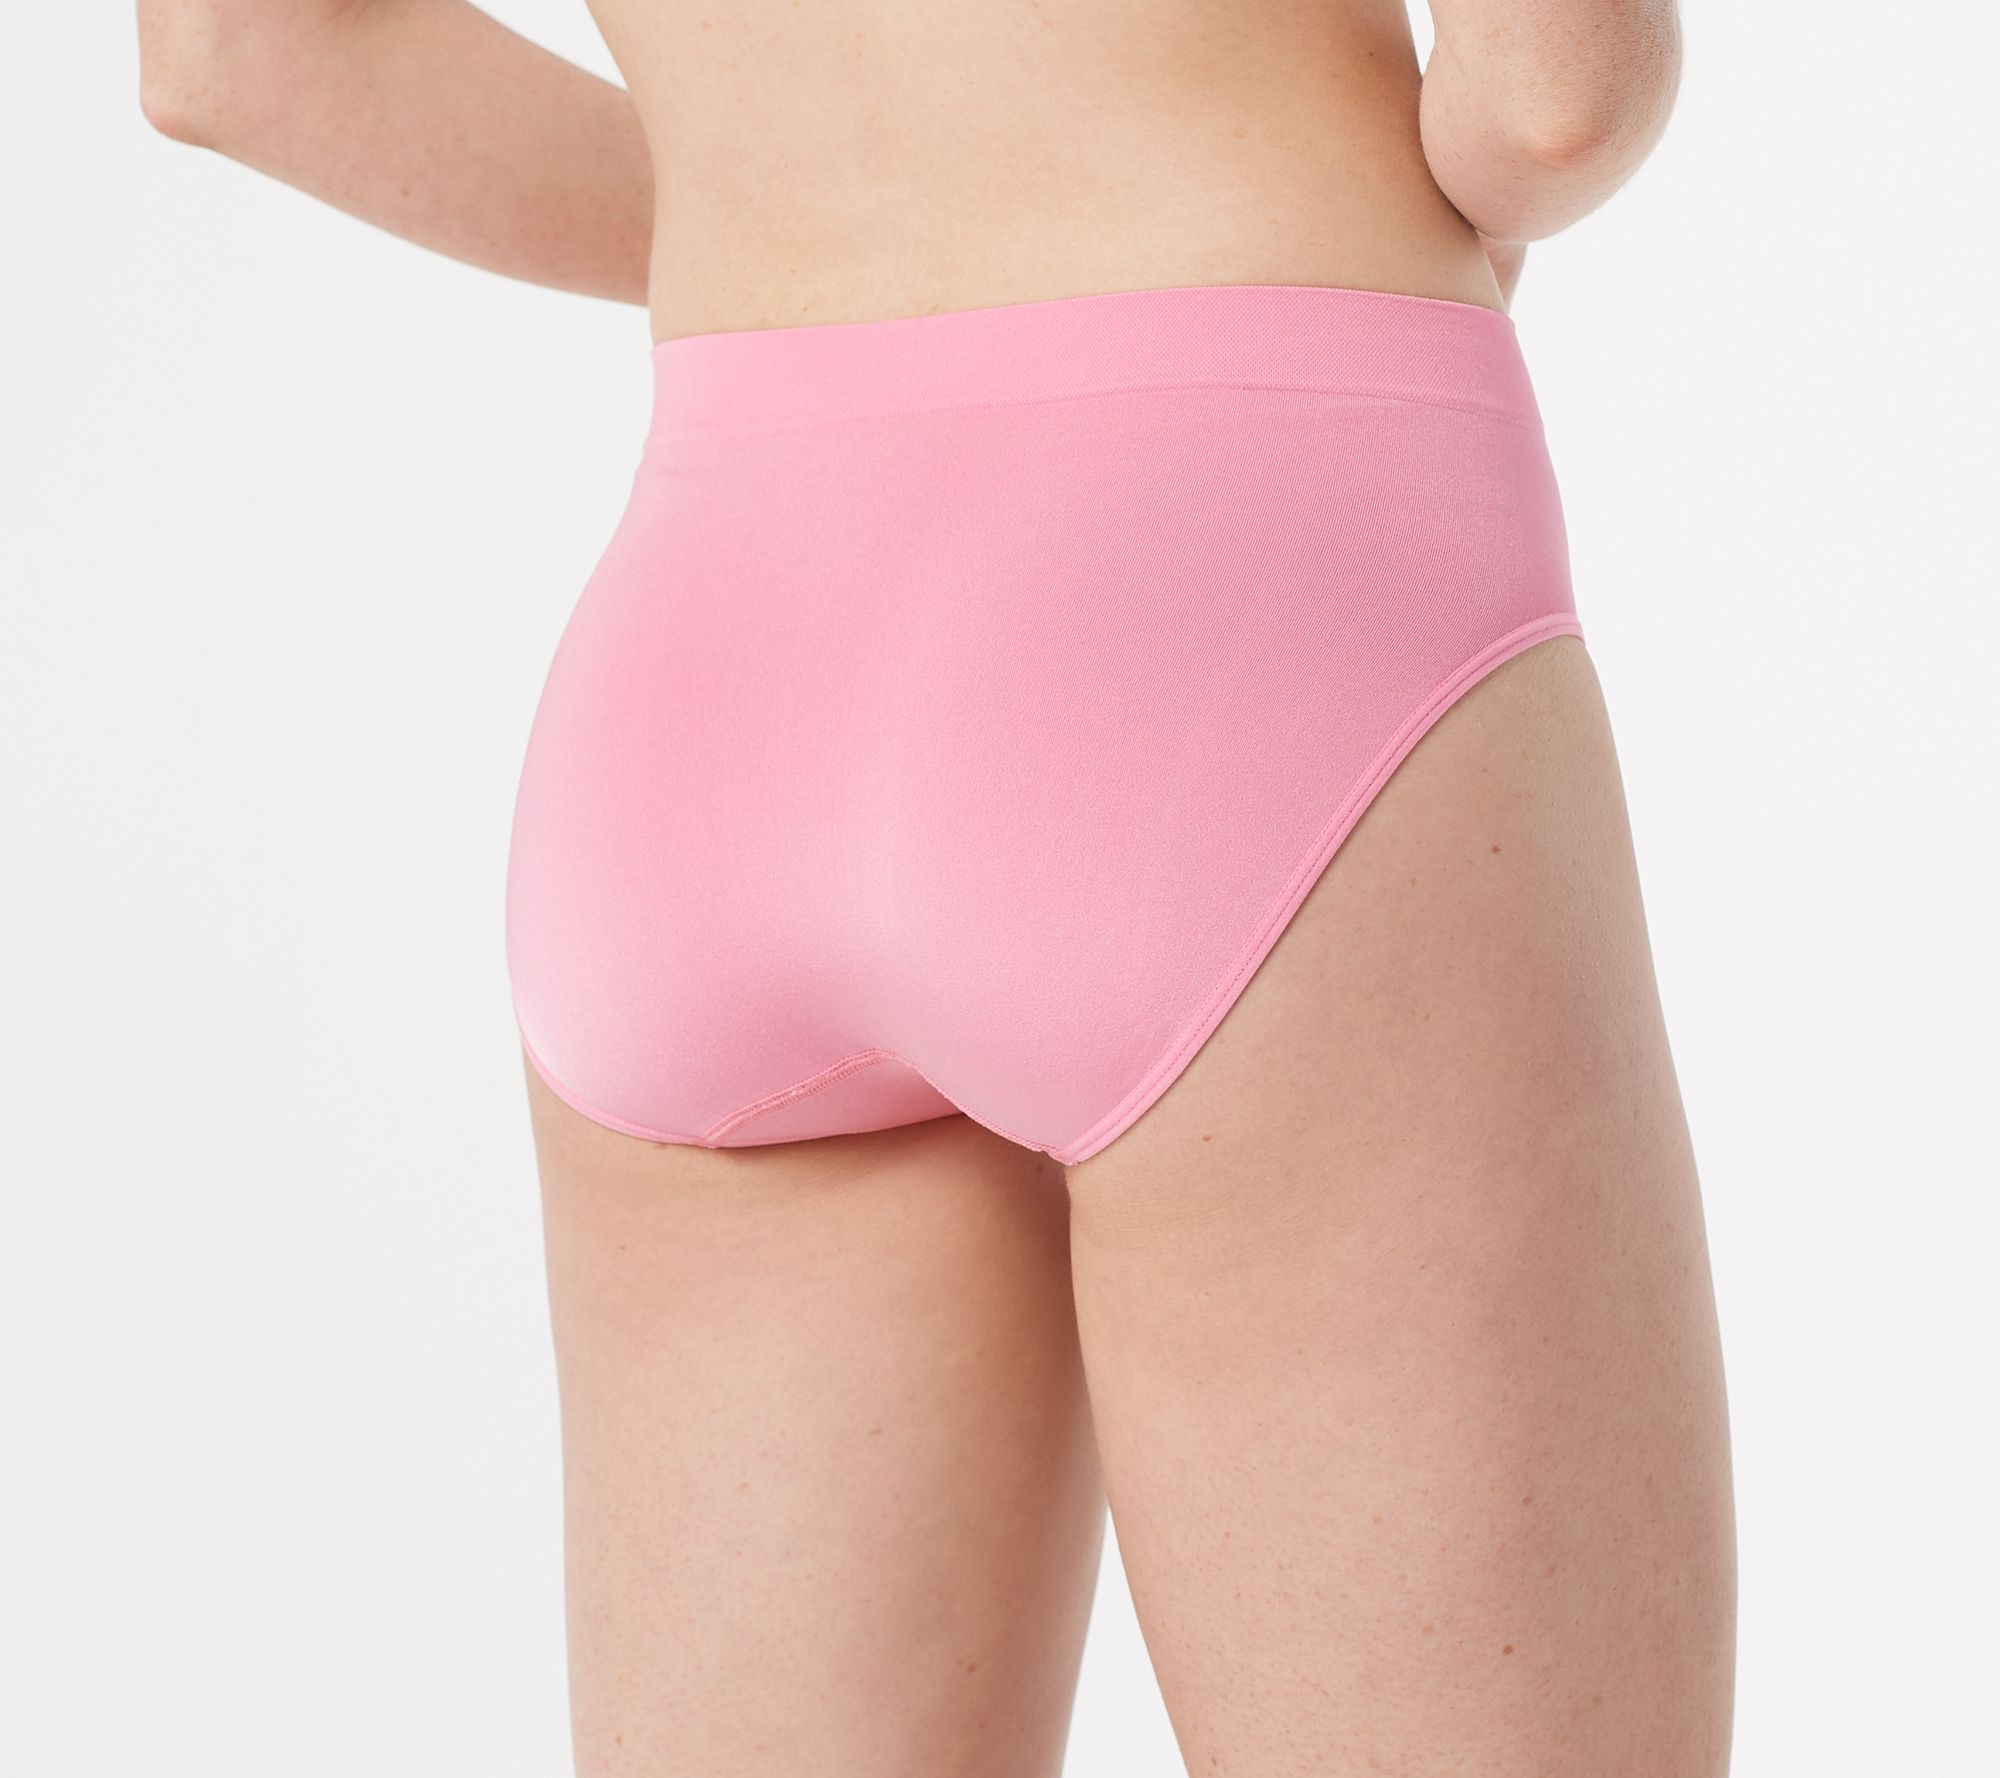 FRIENDS TV Show Girls Underwear Panties - 4 Pair Ex Soft Cotton Brief-Size  8-NEW